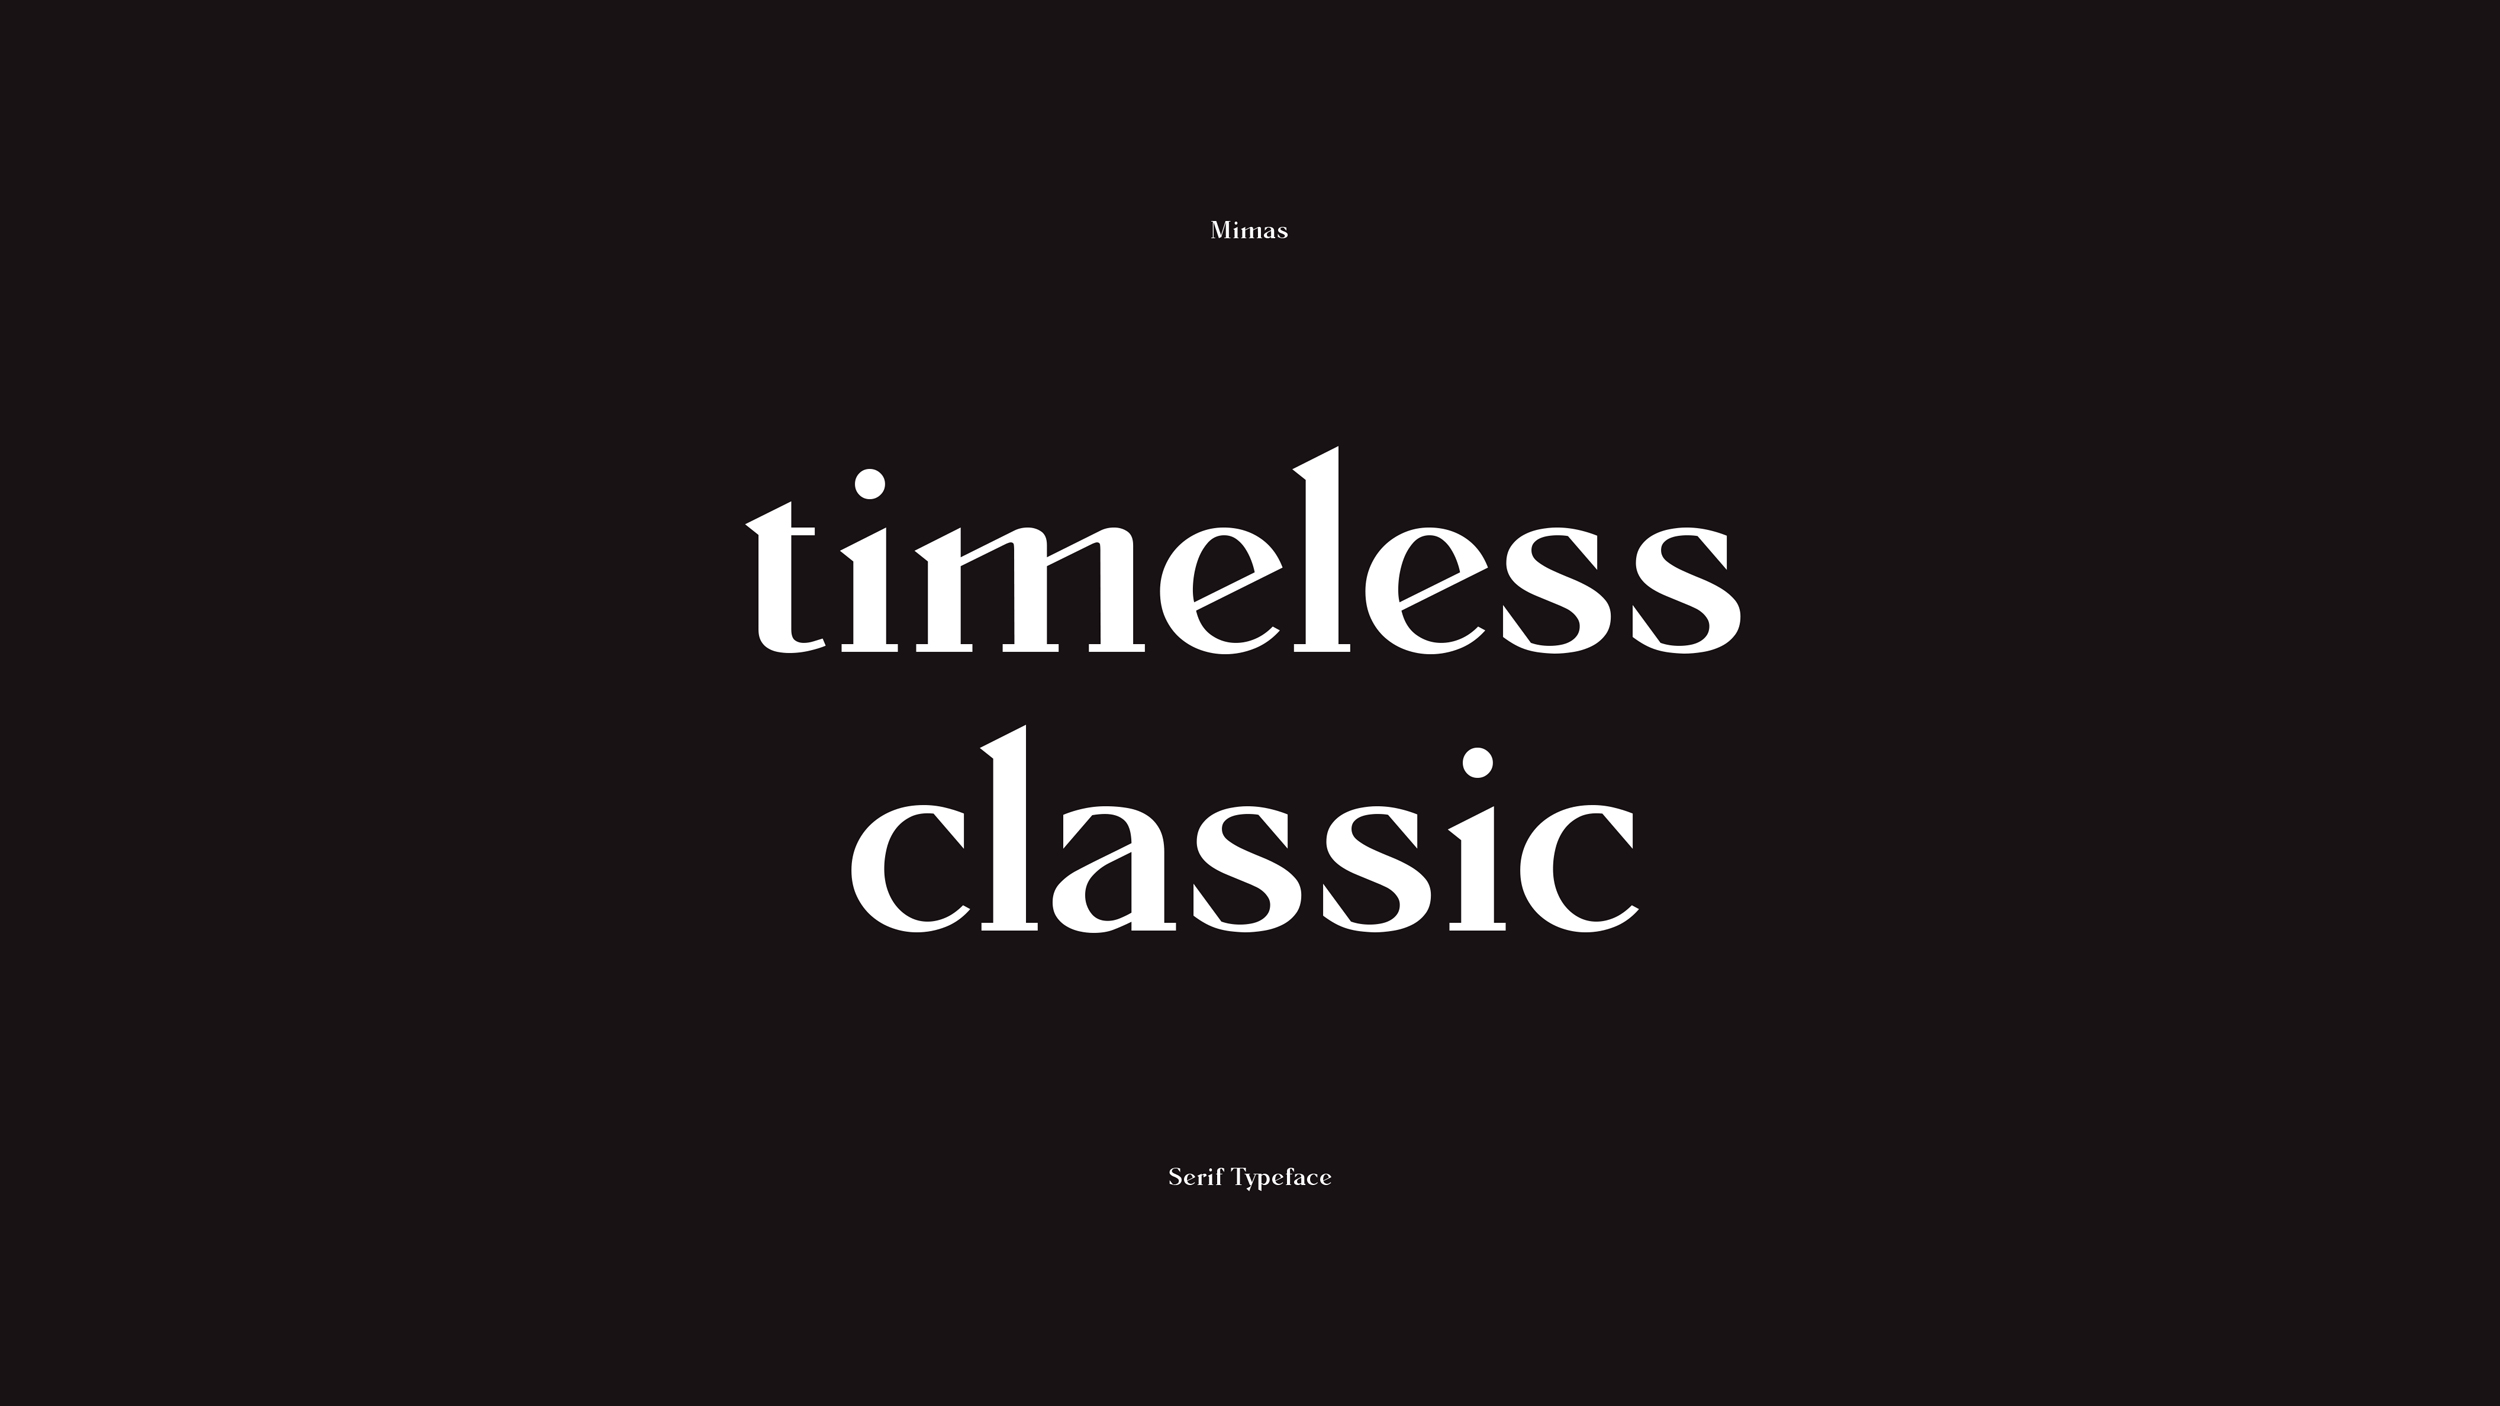 Omecara-Mimas-Typeface-Design-02 2